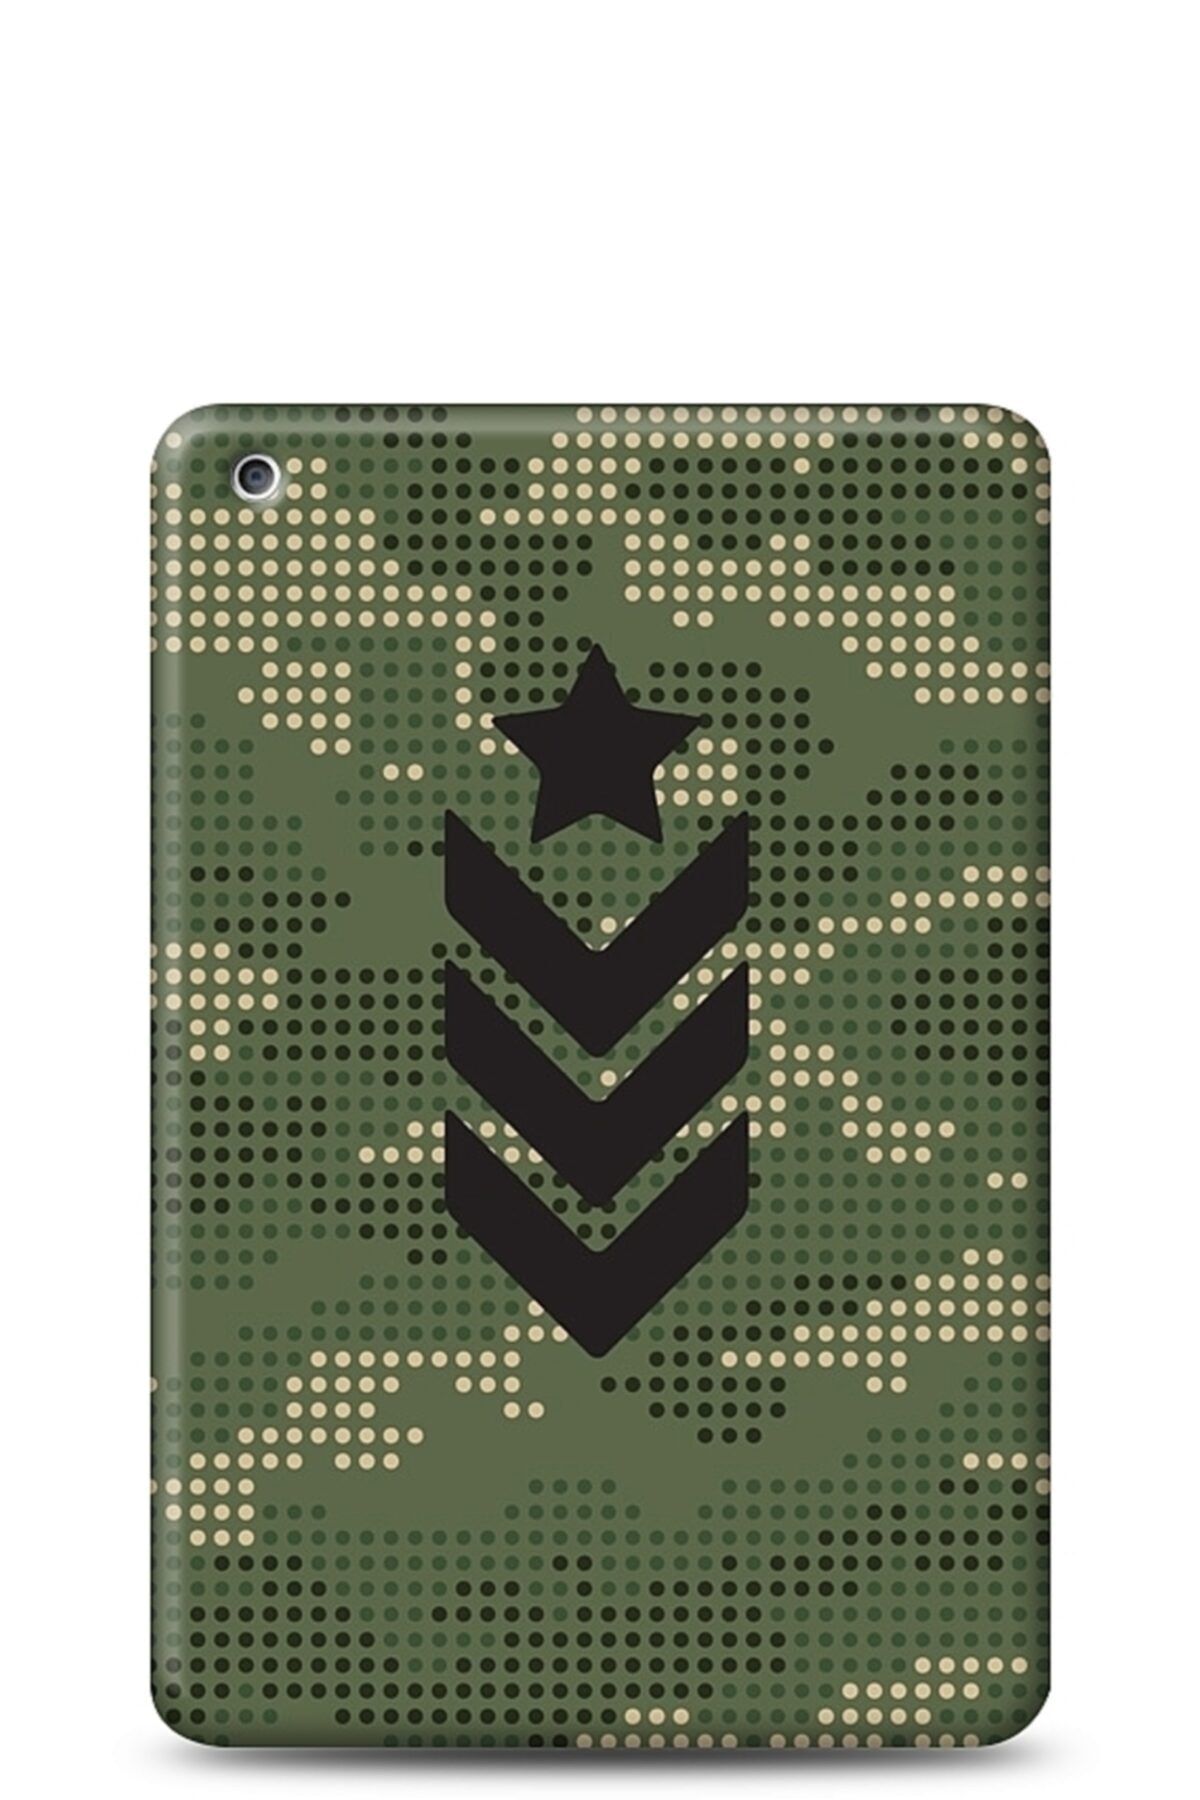 Eiroo Apple Ipad 2 Camouflage Kılıf